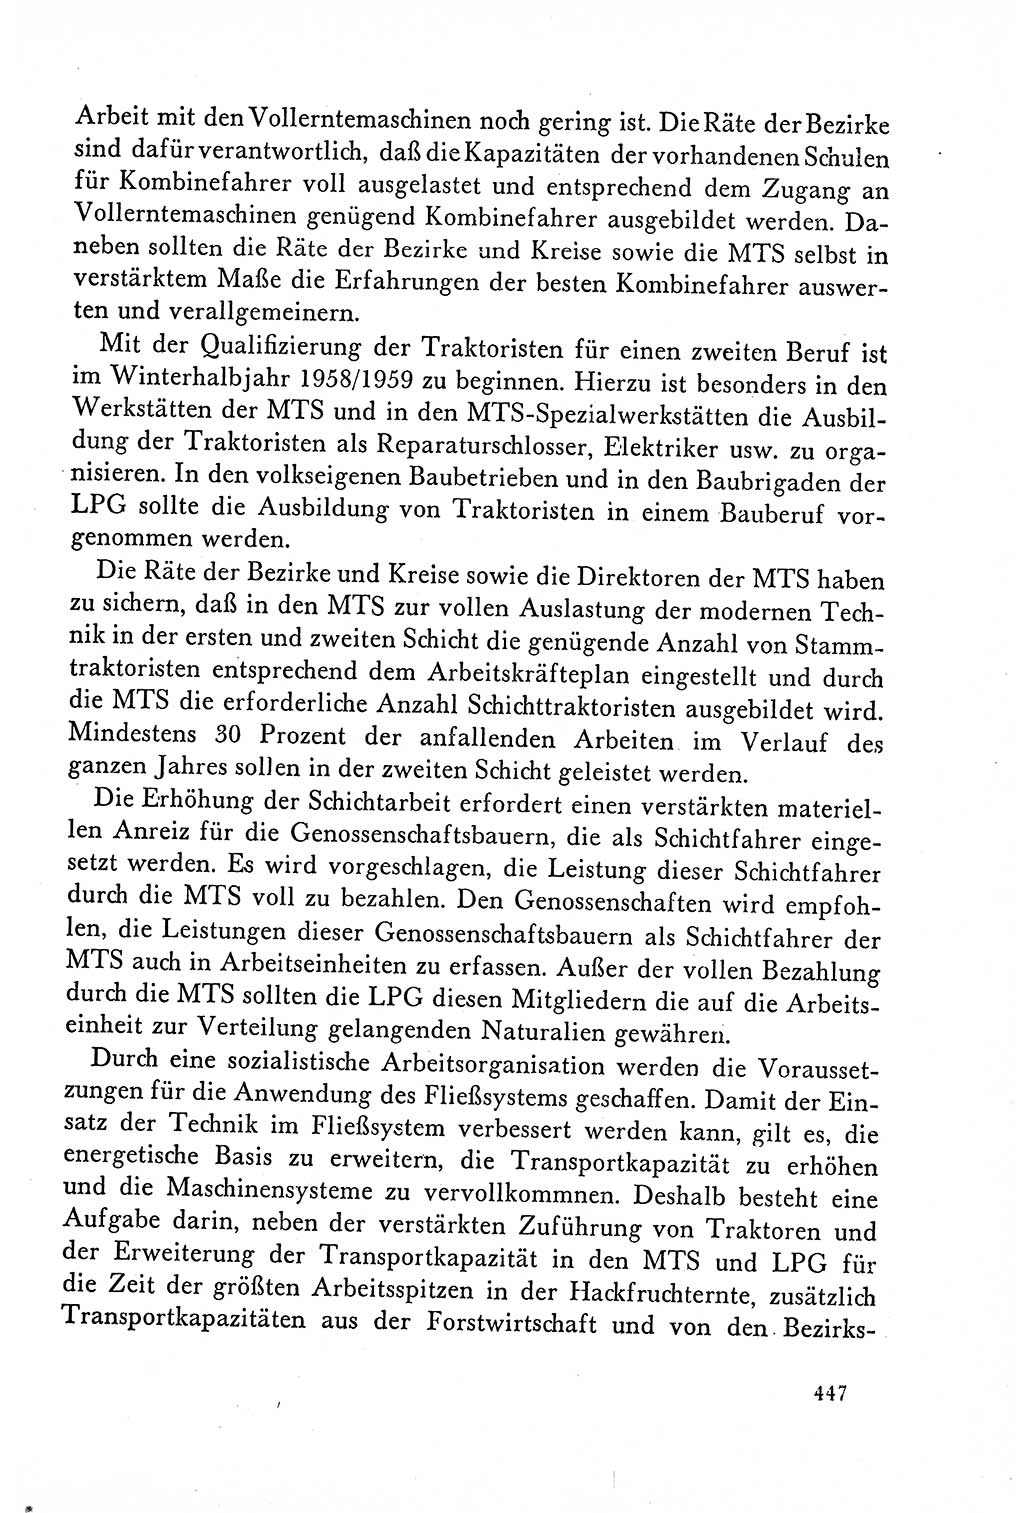 Dokumente der Sozialistischen Einheitspartei Deutschlands (SED) [Deutsche Demokratische Republik (DDR)] 1958-1959, Seite 447 (Dok. SED DDR 1958-1959, S. 447)